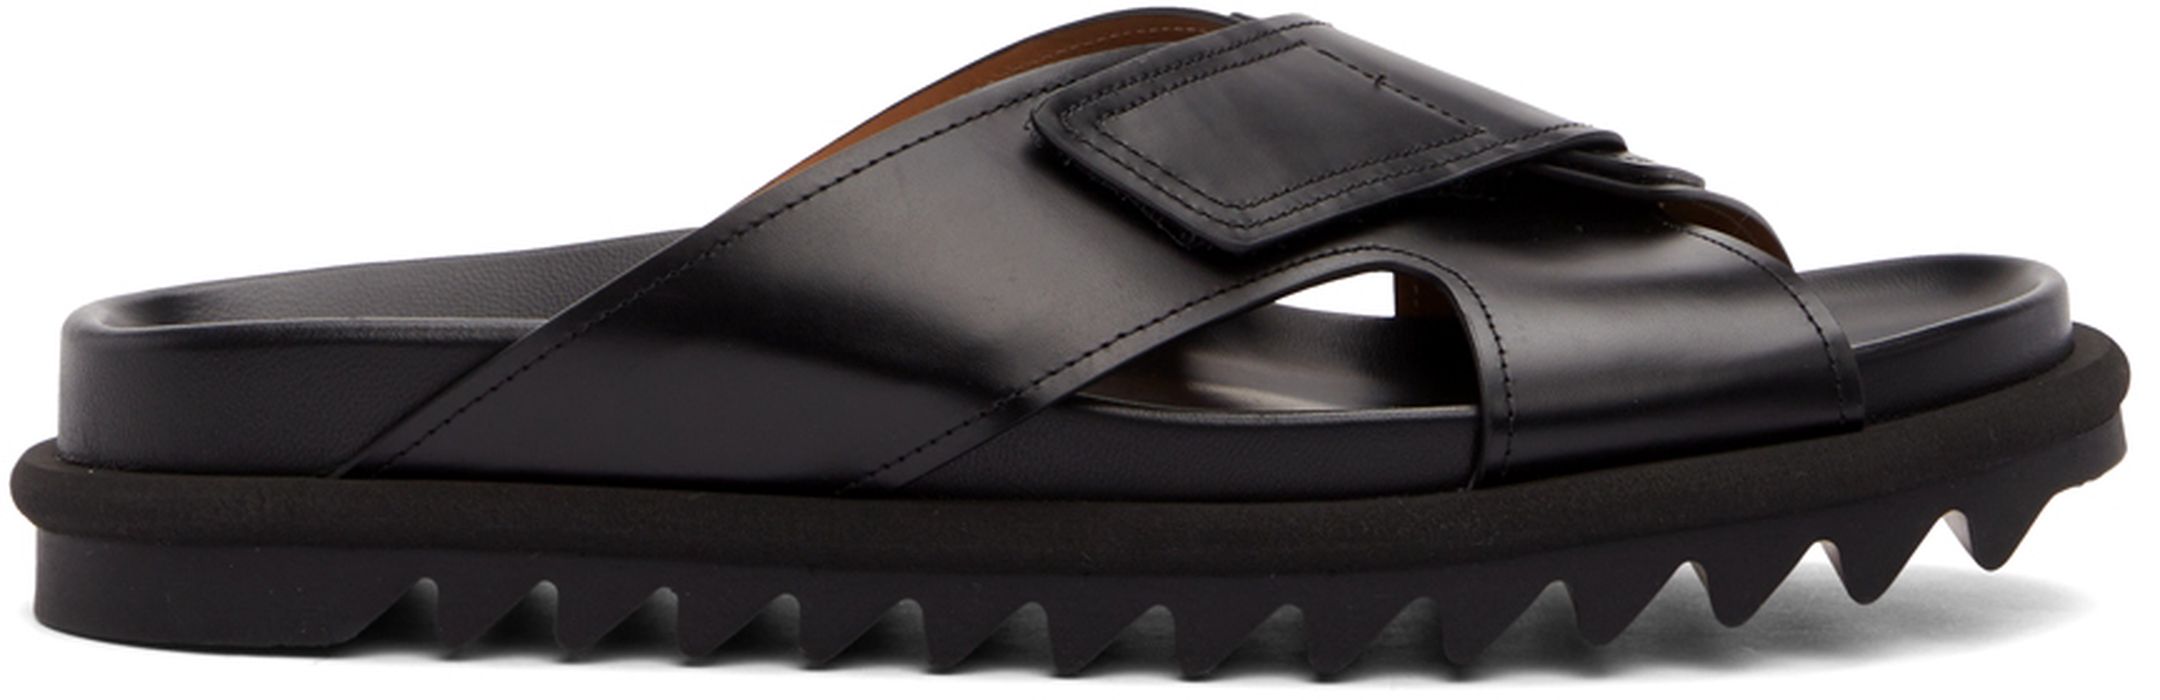 Dries Van Noten Black Leather Criss-Cross Sandals